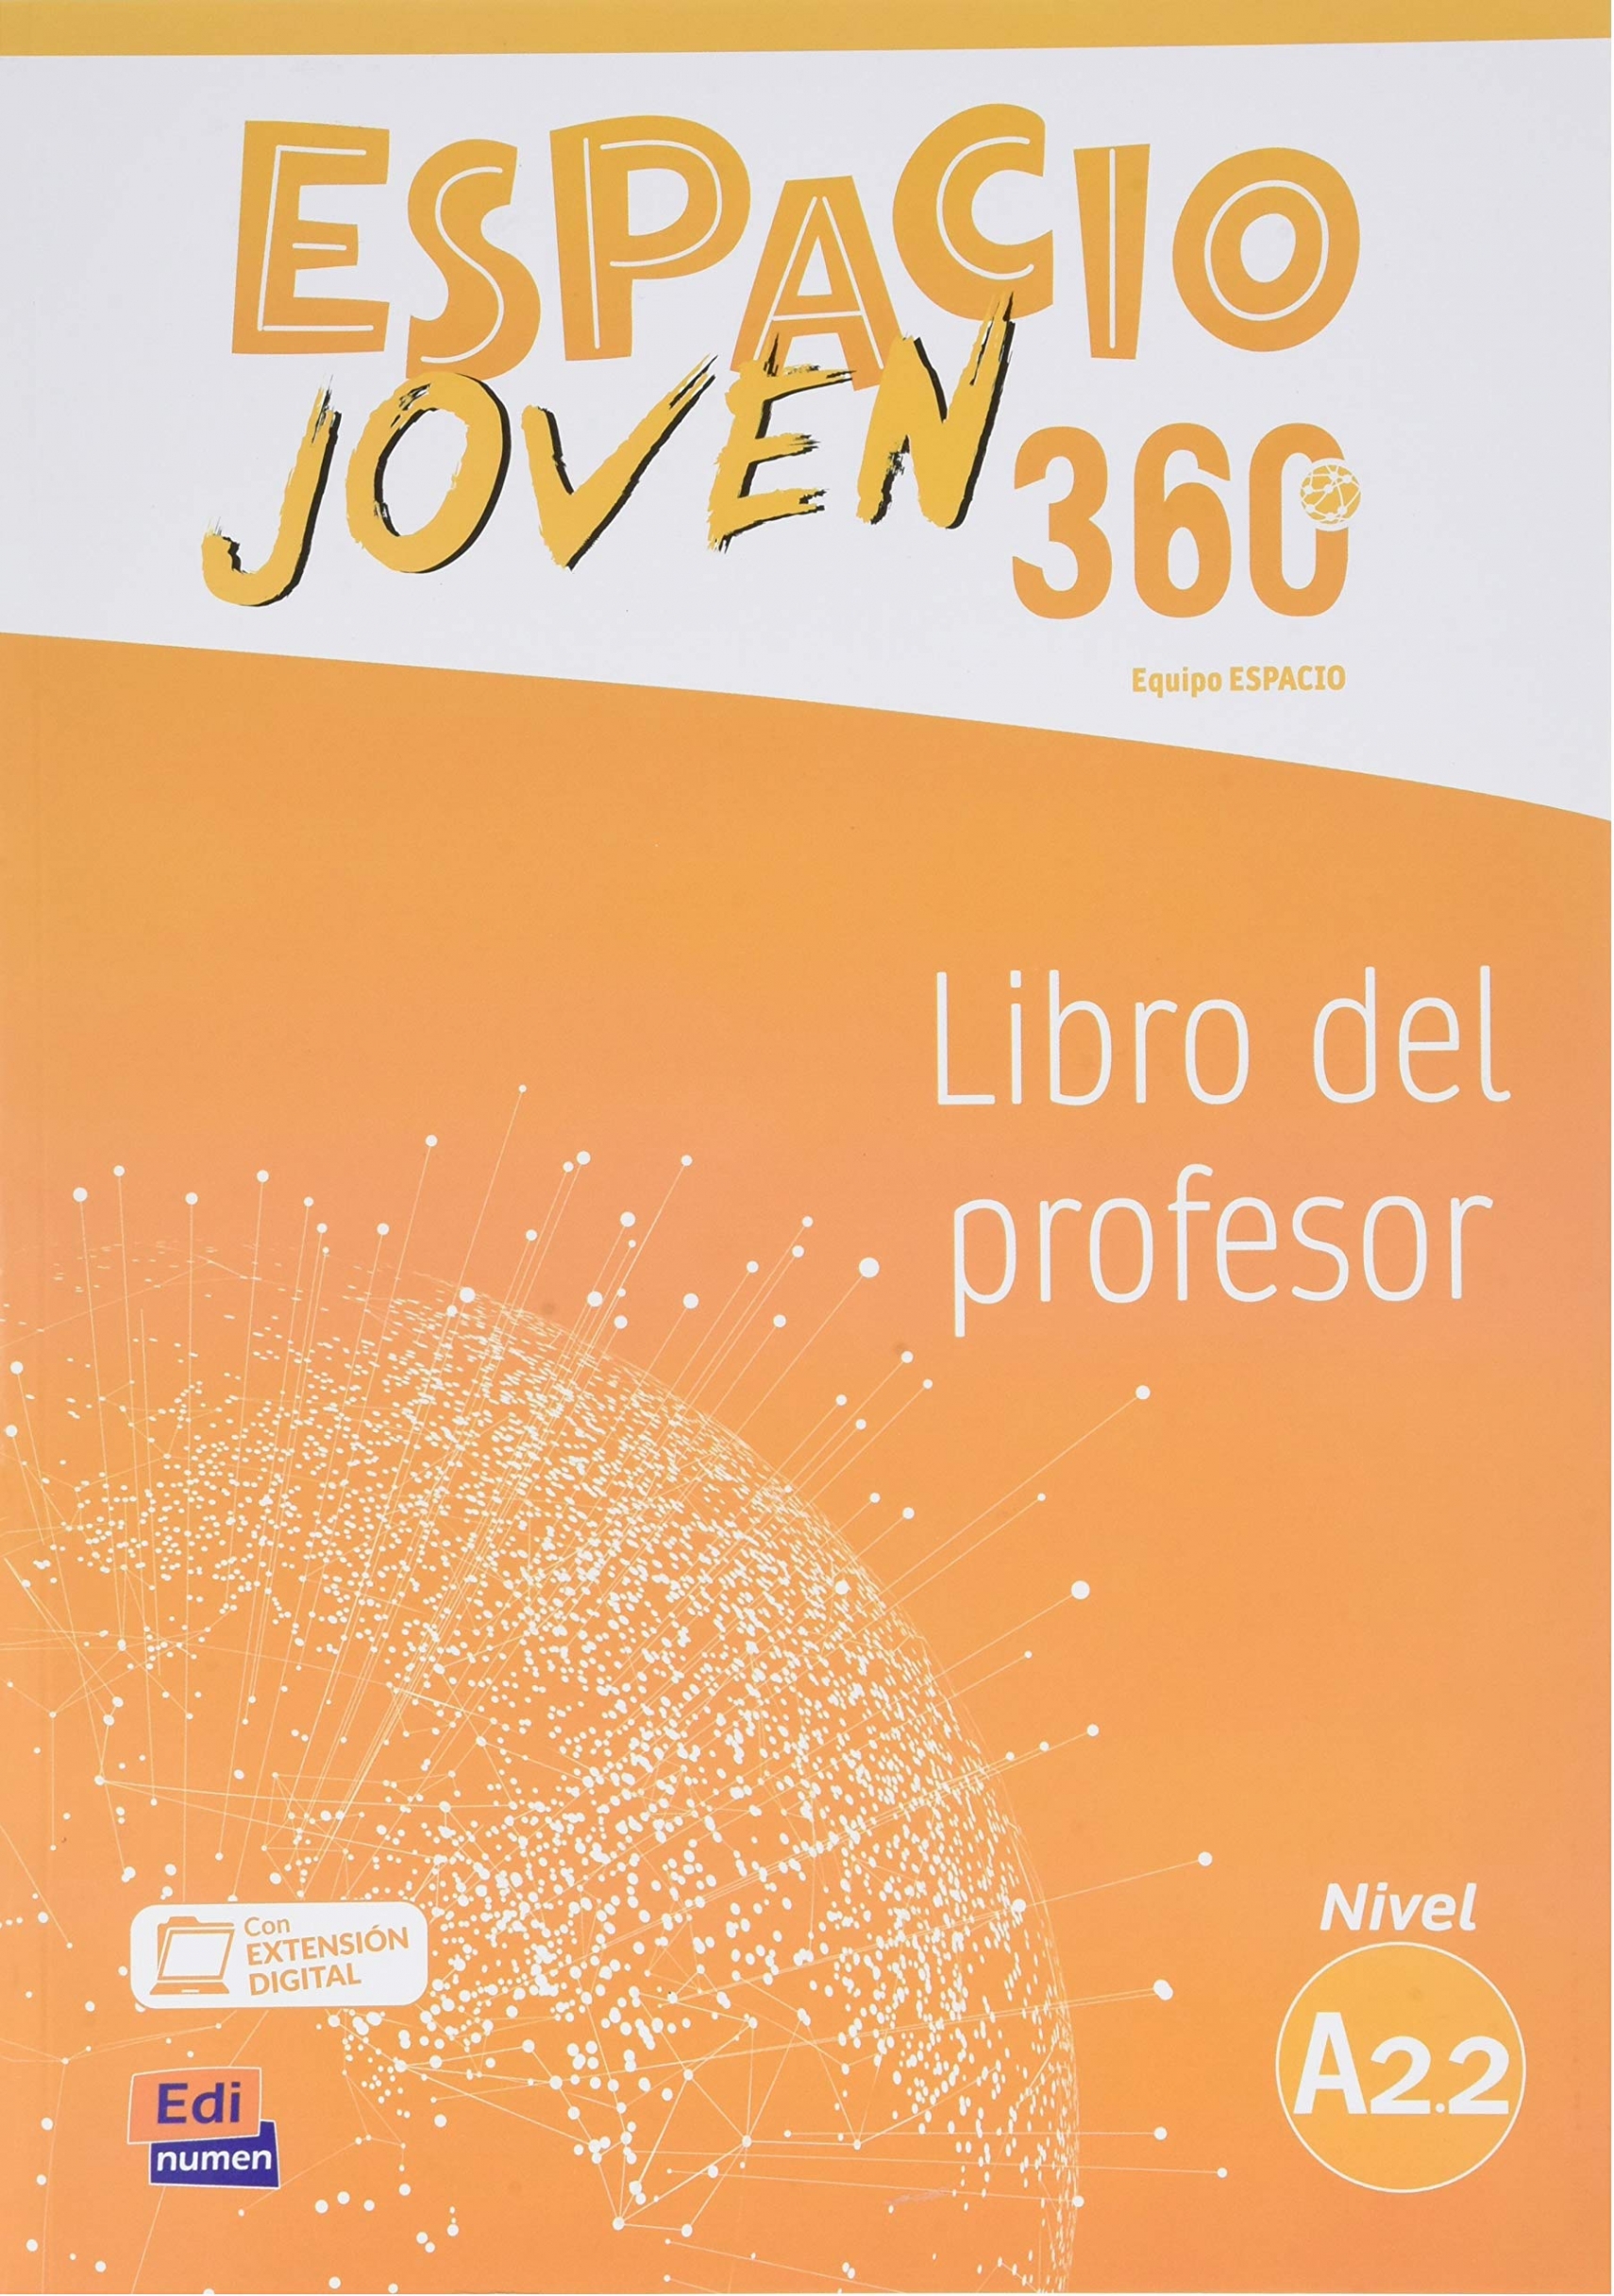 Equipo Espacio Joven Espacio Joven 360 - Libro del profesor. Nivel A2.2 